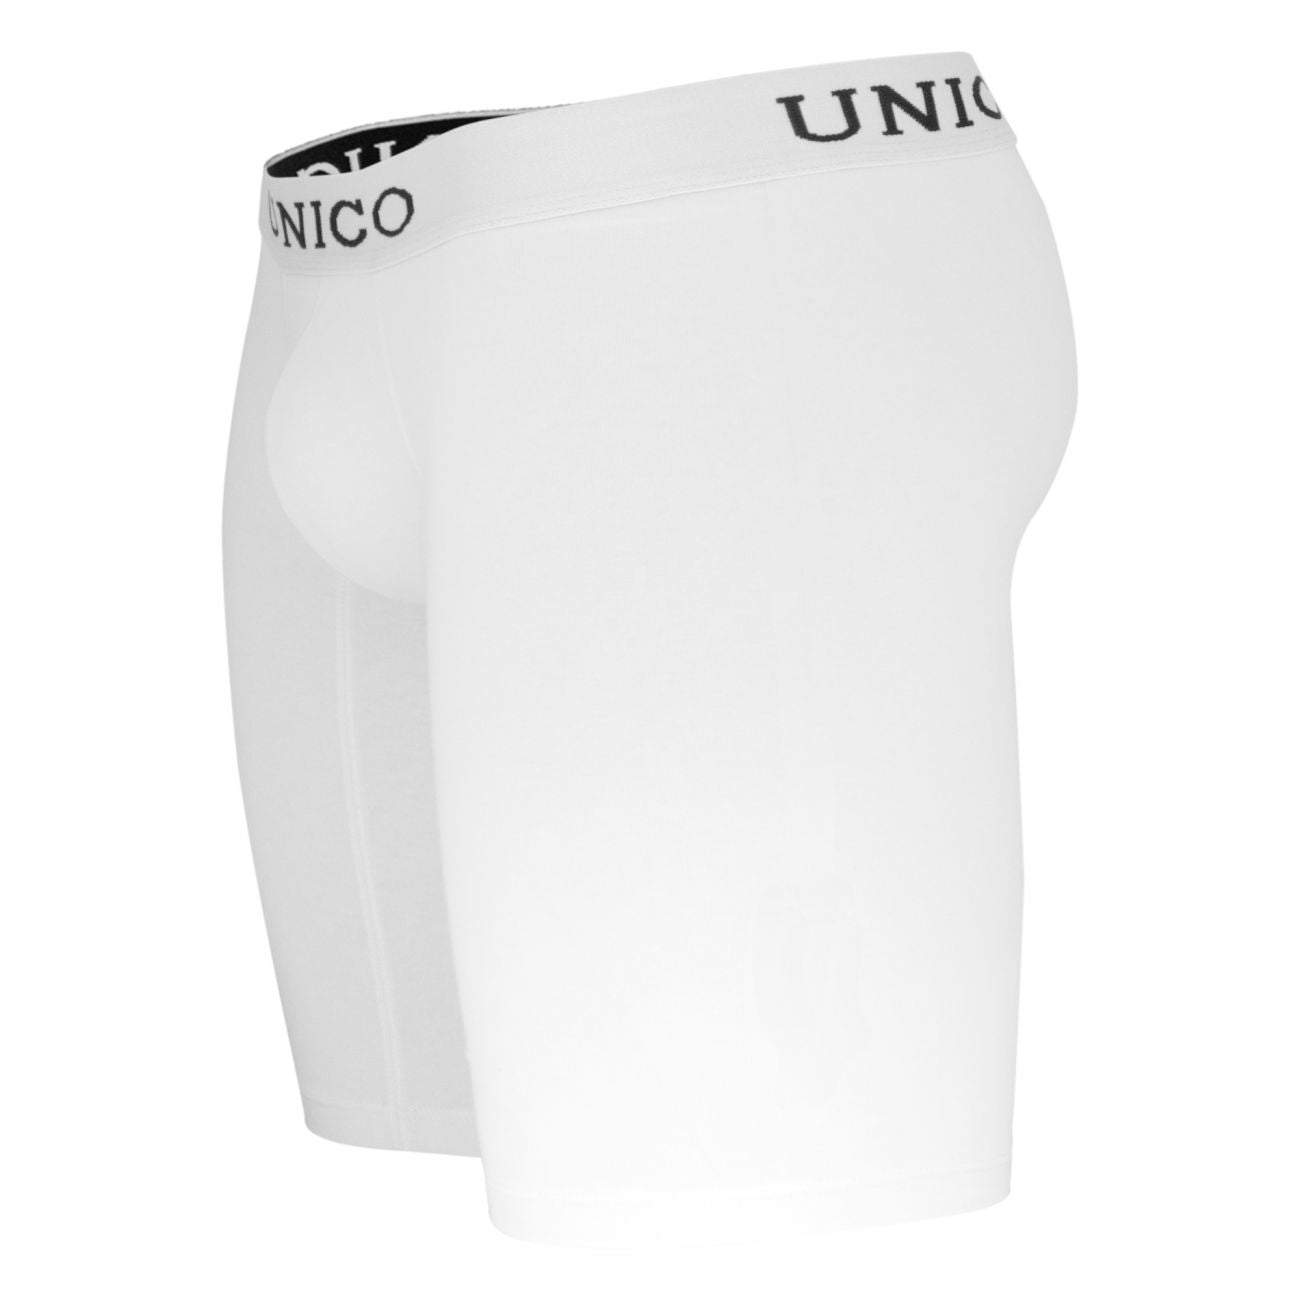 Unico 9610100100 Boxer Briefs Cristalino